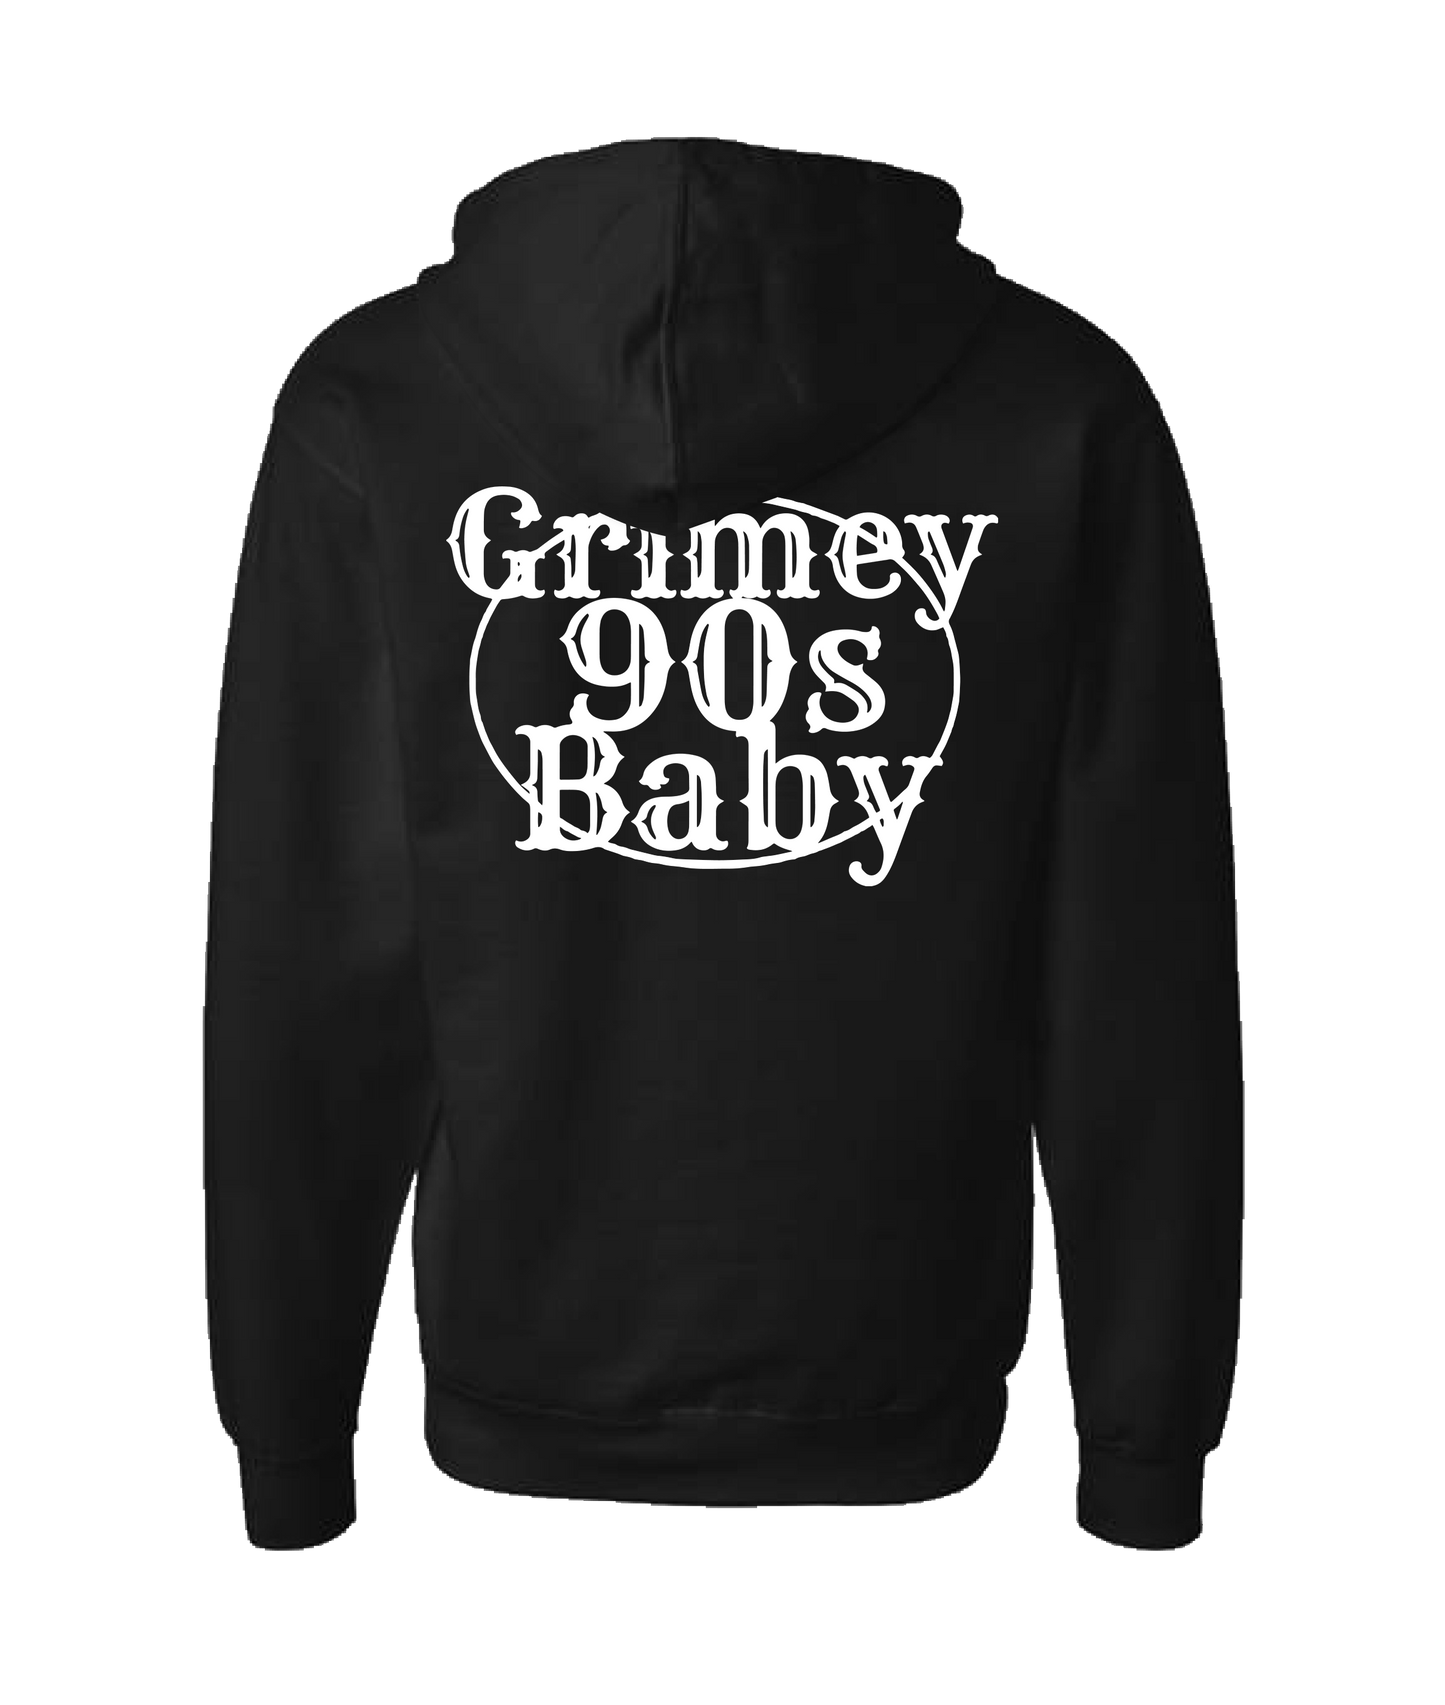 GRIMEY 90s BABY - GRIMEY - Black Zip Up Hoodie